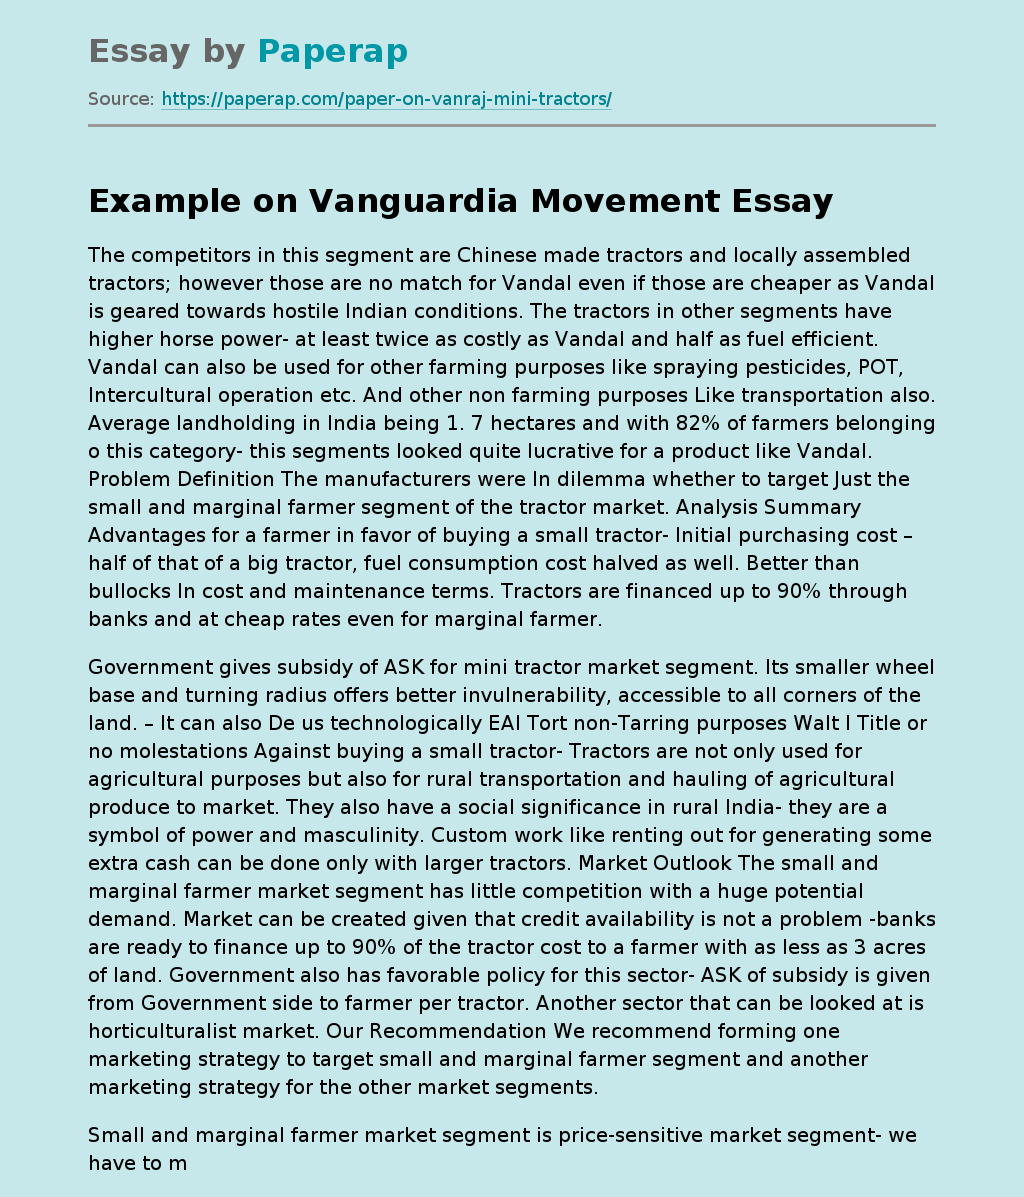 Example on Vanguardia Movement